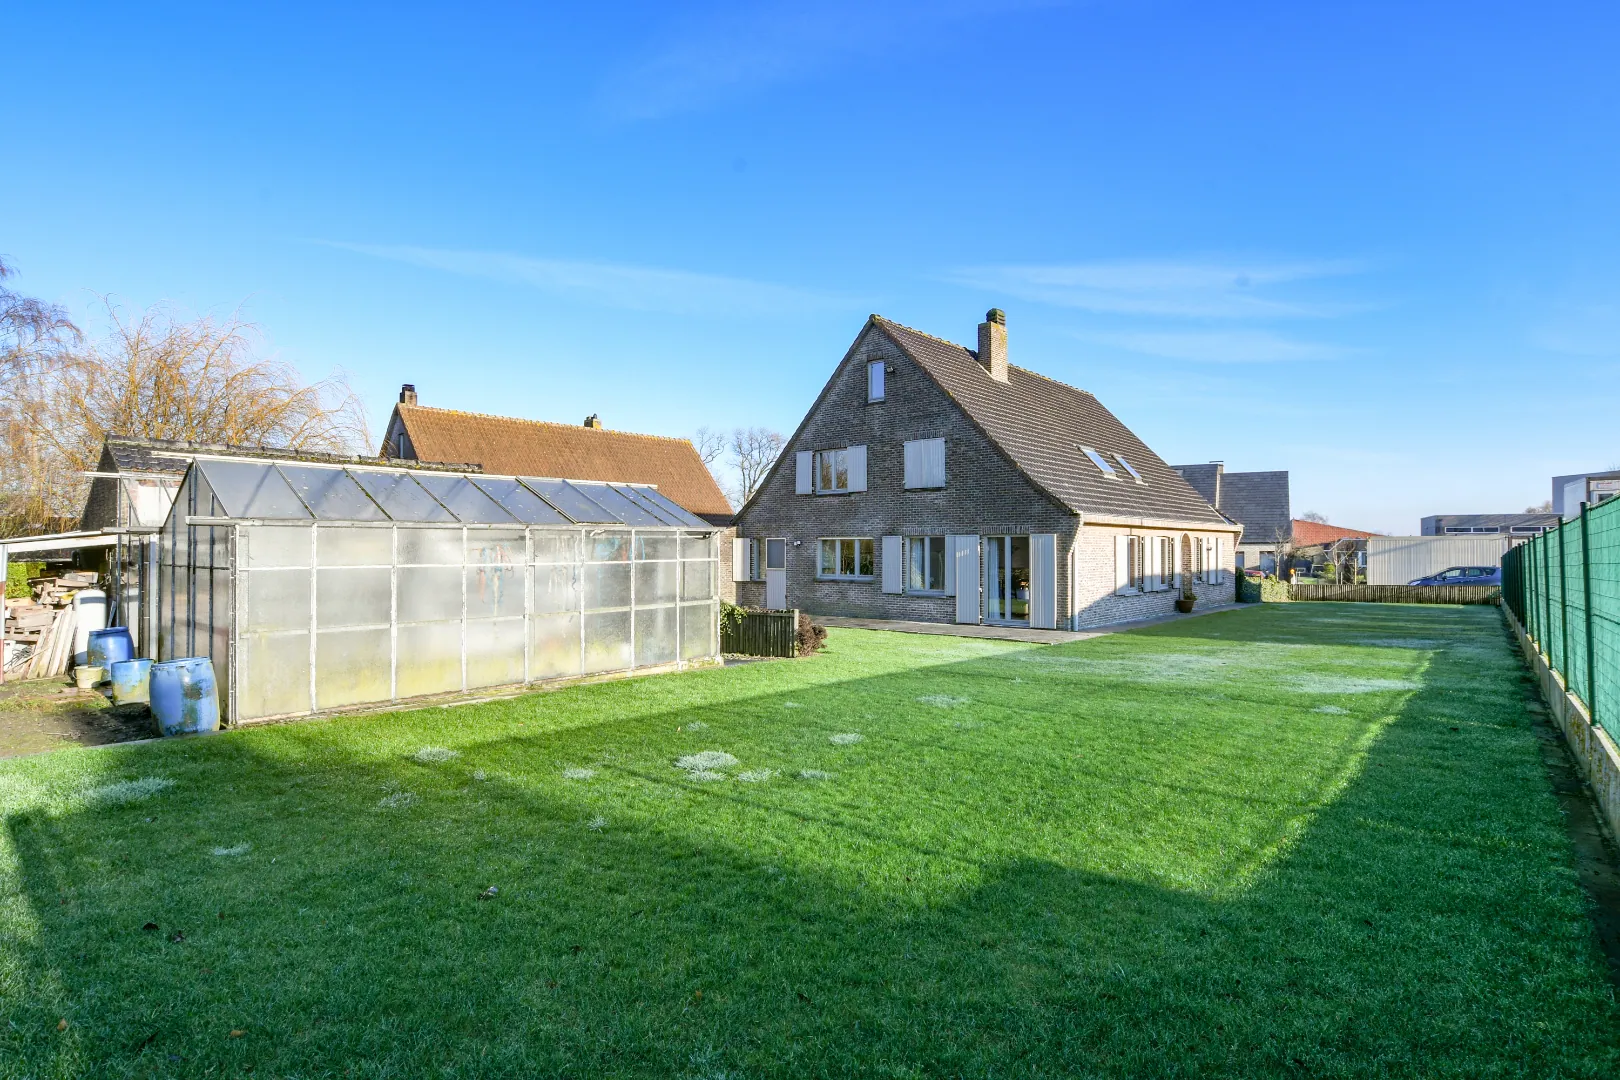  Alleenstaande villa op 2.890 m² grond te Oudenburg met garage, tuin en 6 slaapkamers